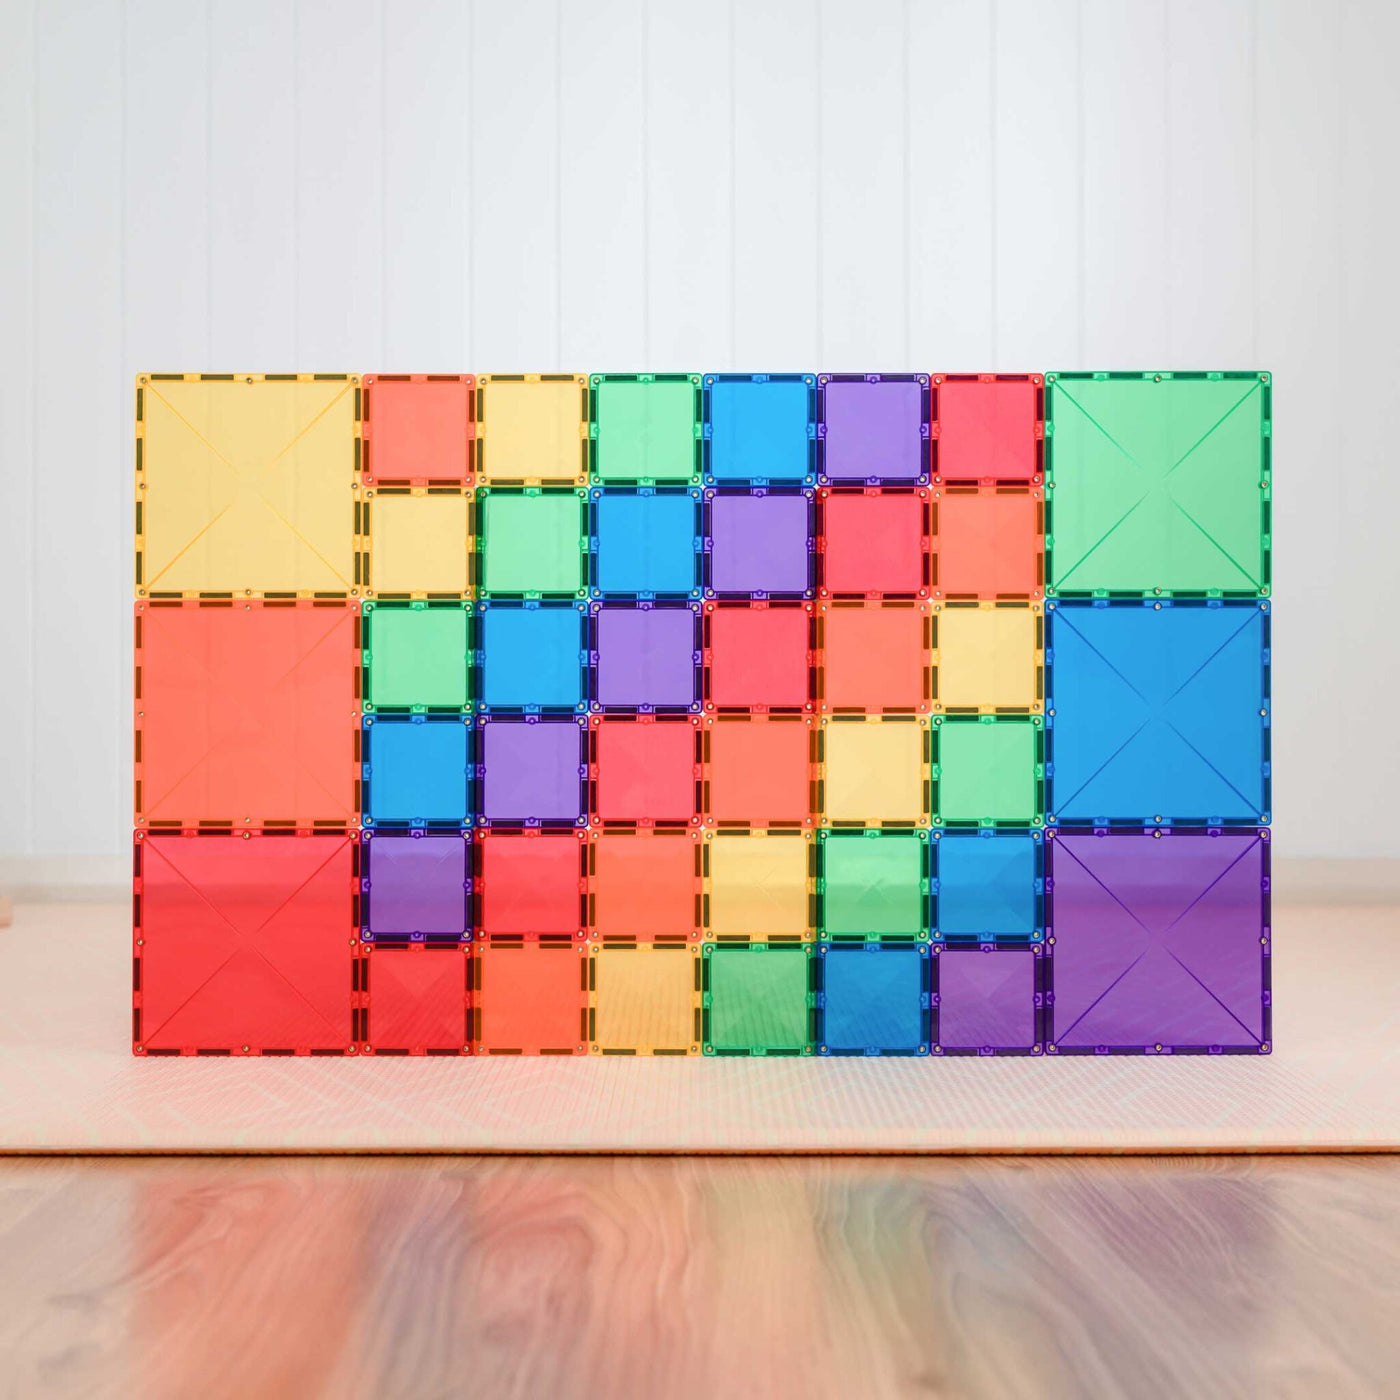 Connetix Rainbow Magnetic Tiles Square Pack - 42 Piece